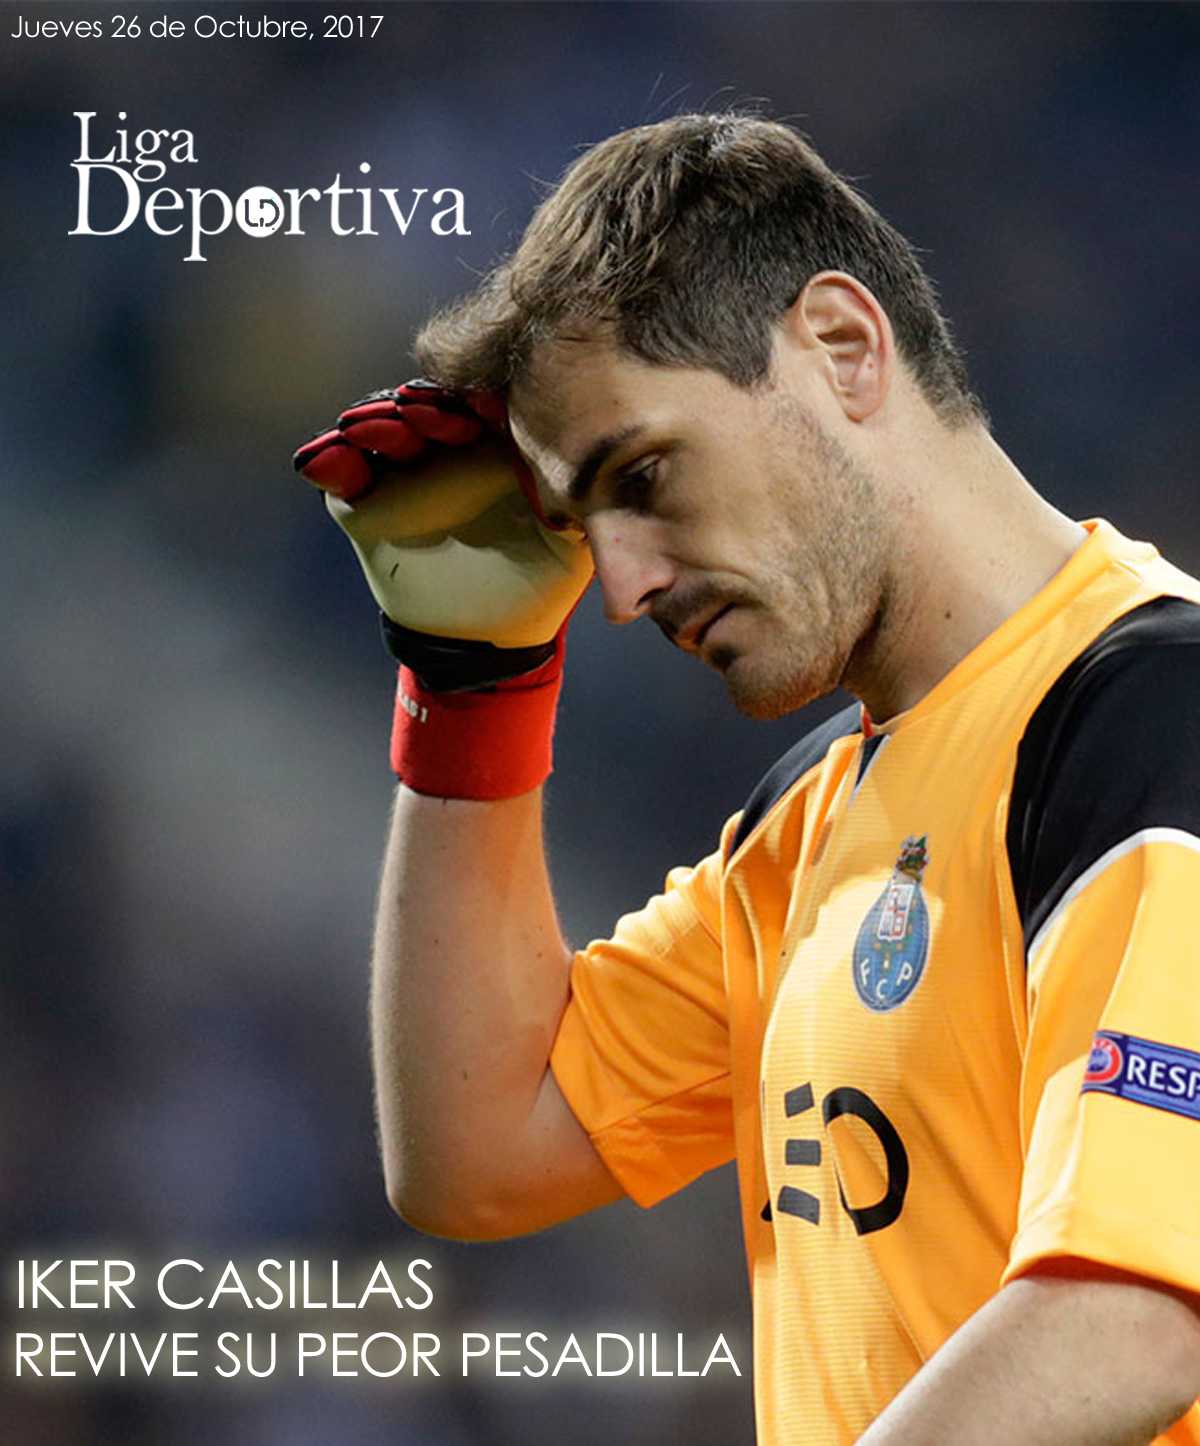 Iker Casillas revive su peor pesadilla en Oporto 